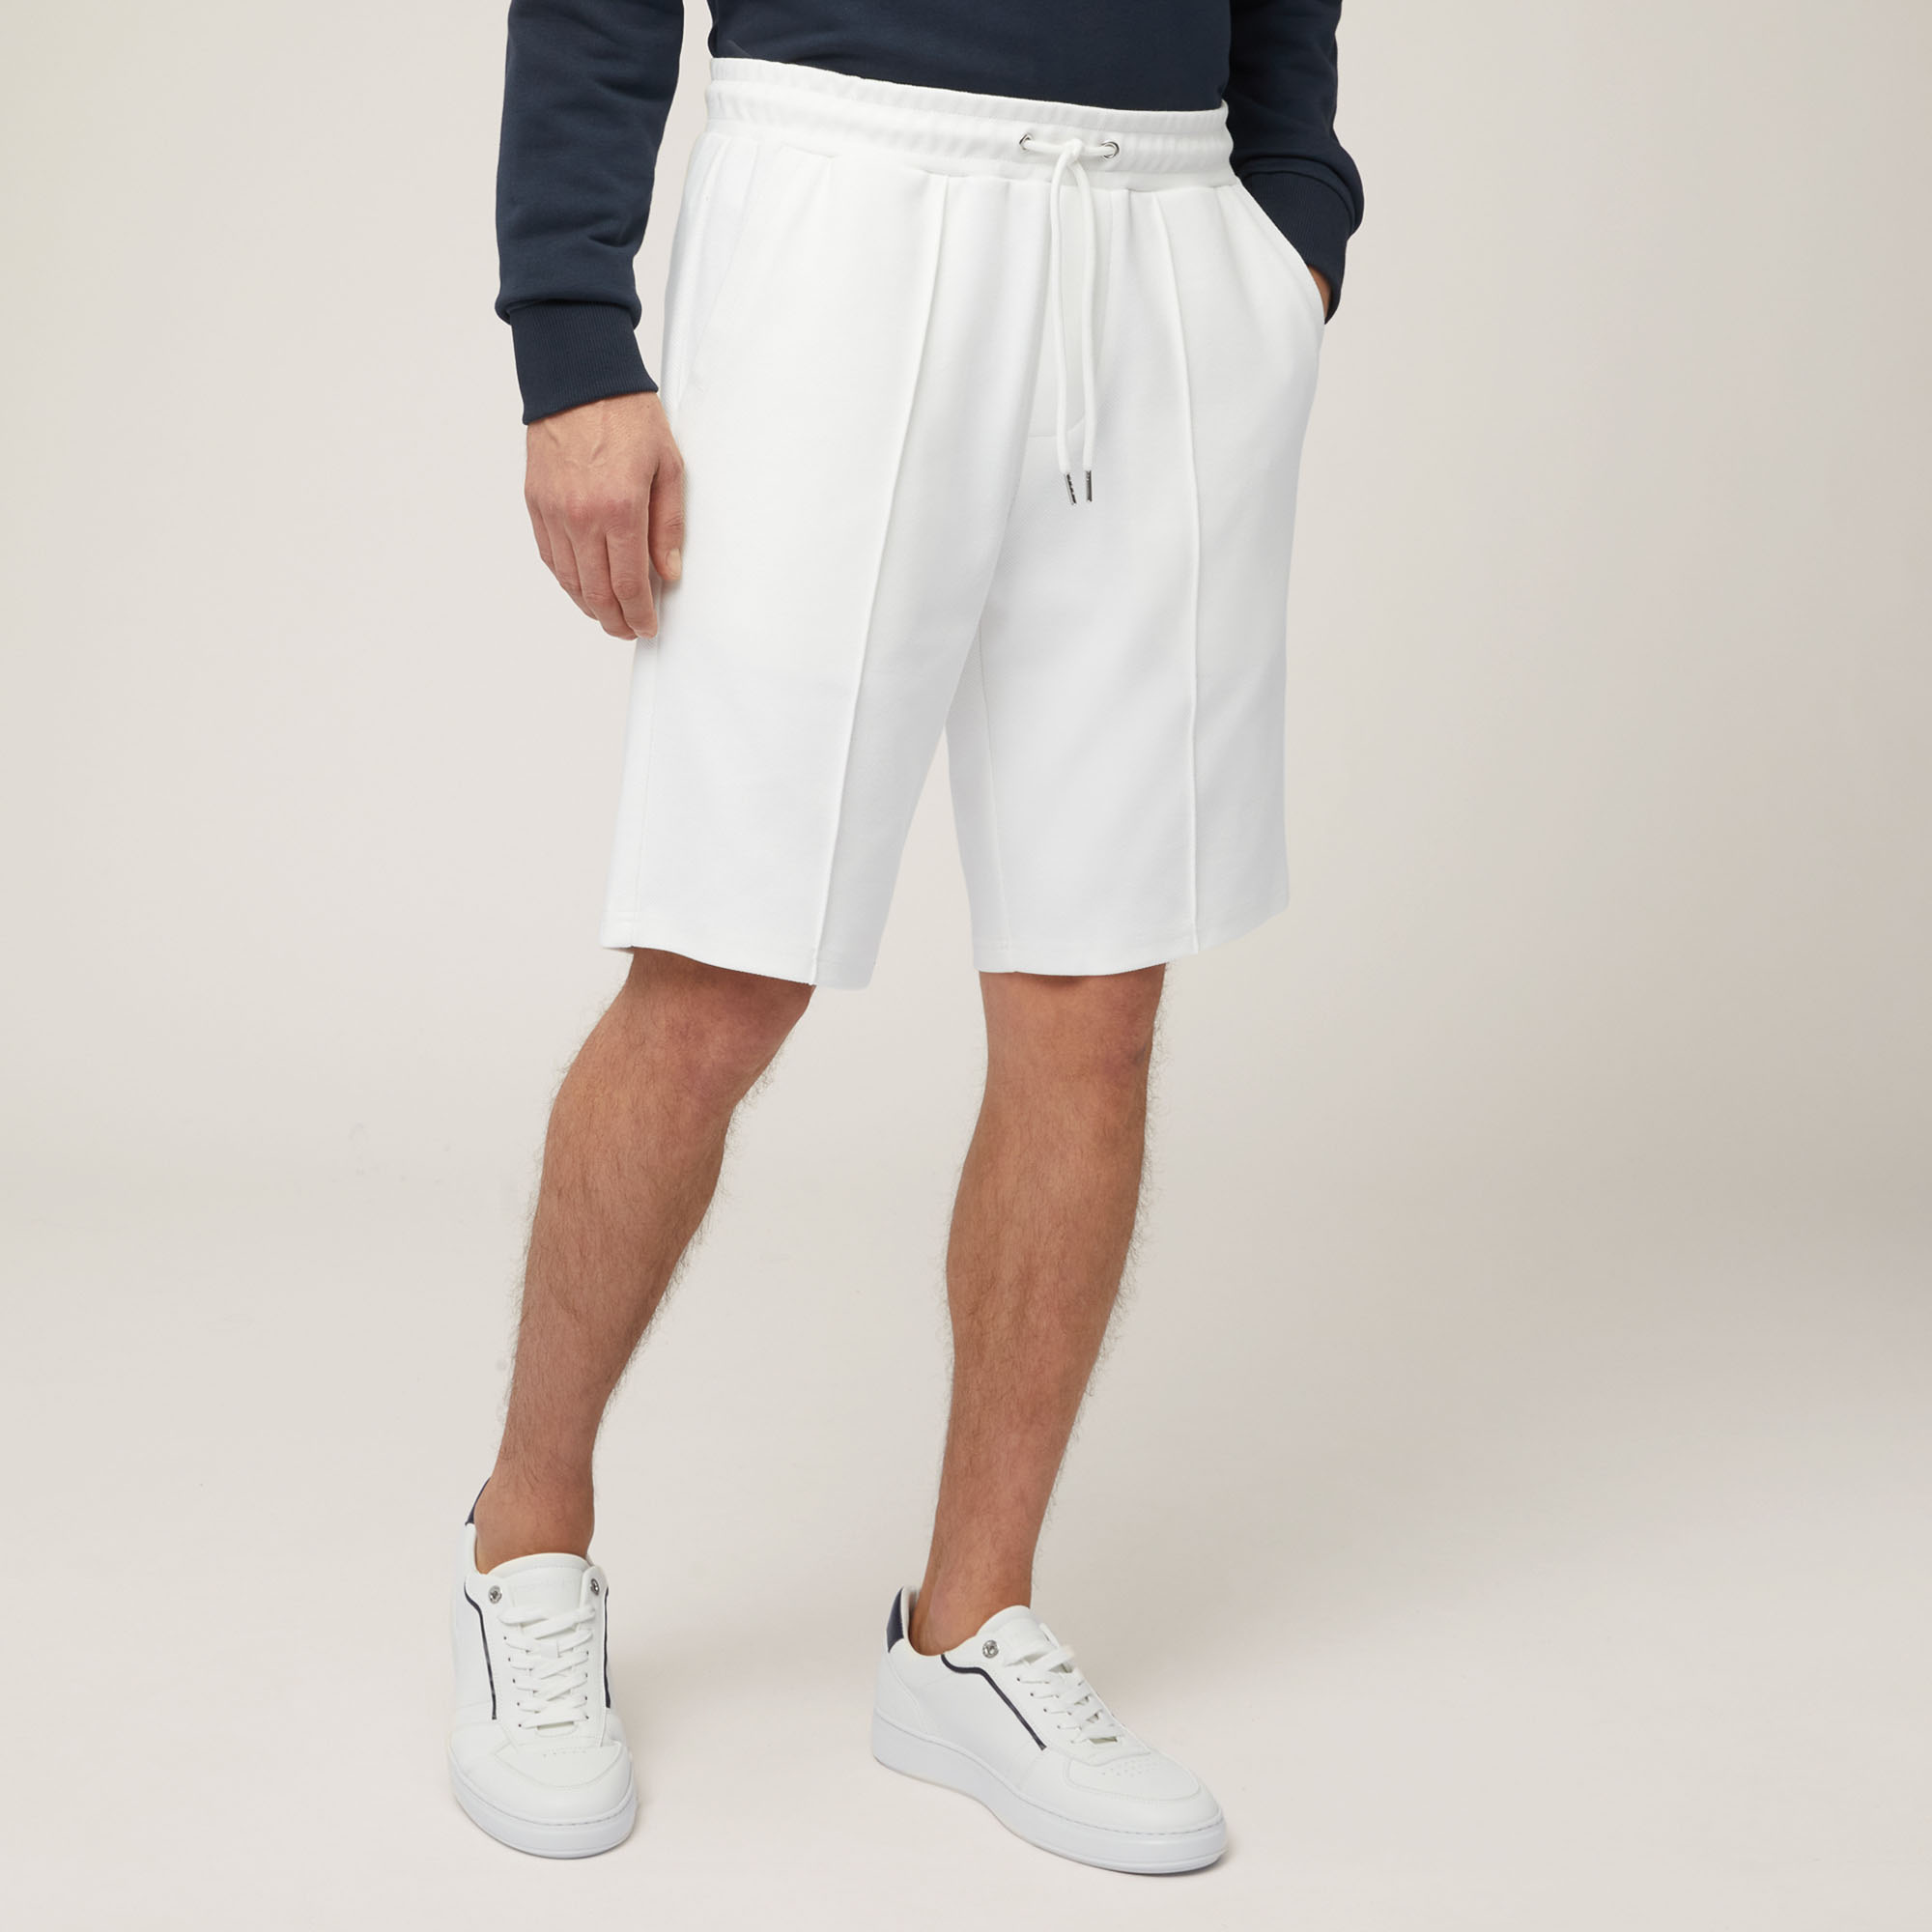 Pantalón corto de algodón elástico con bolsillo trasero, Blanco, large image number 0